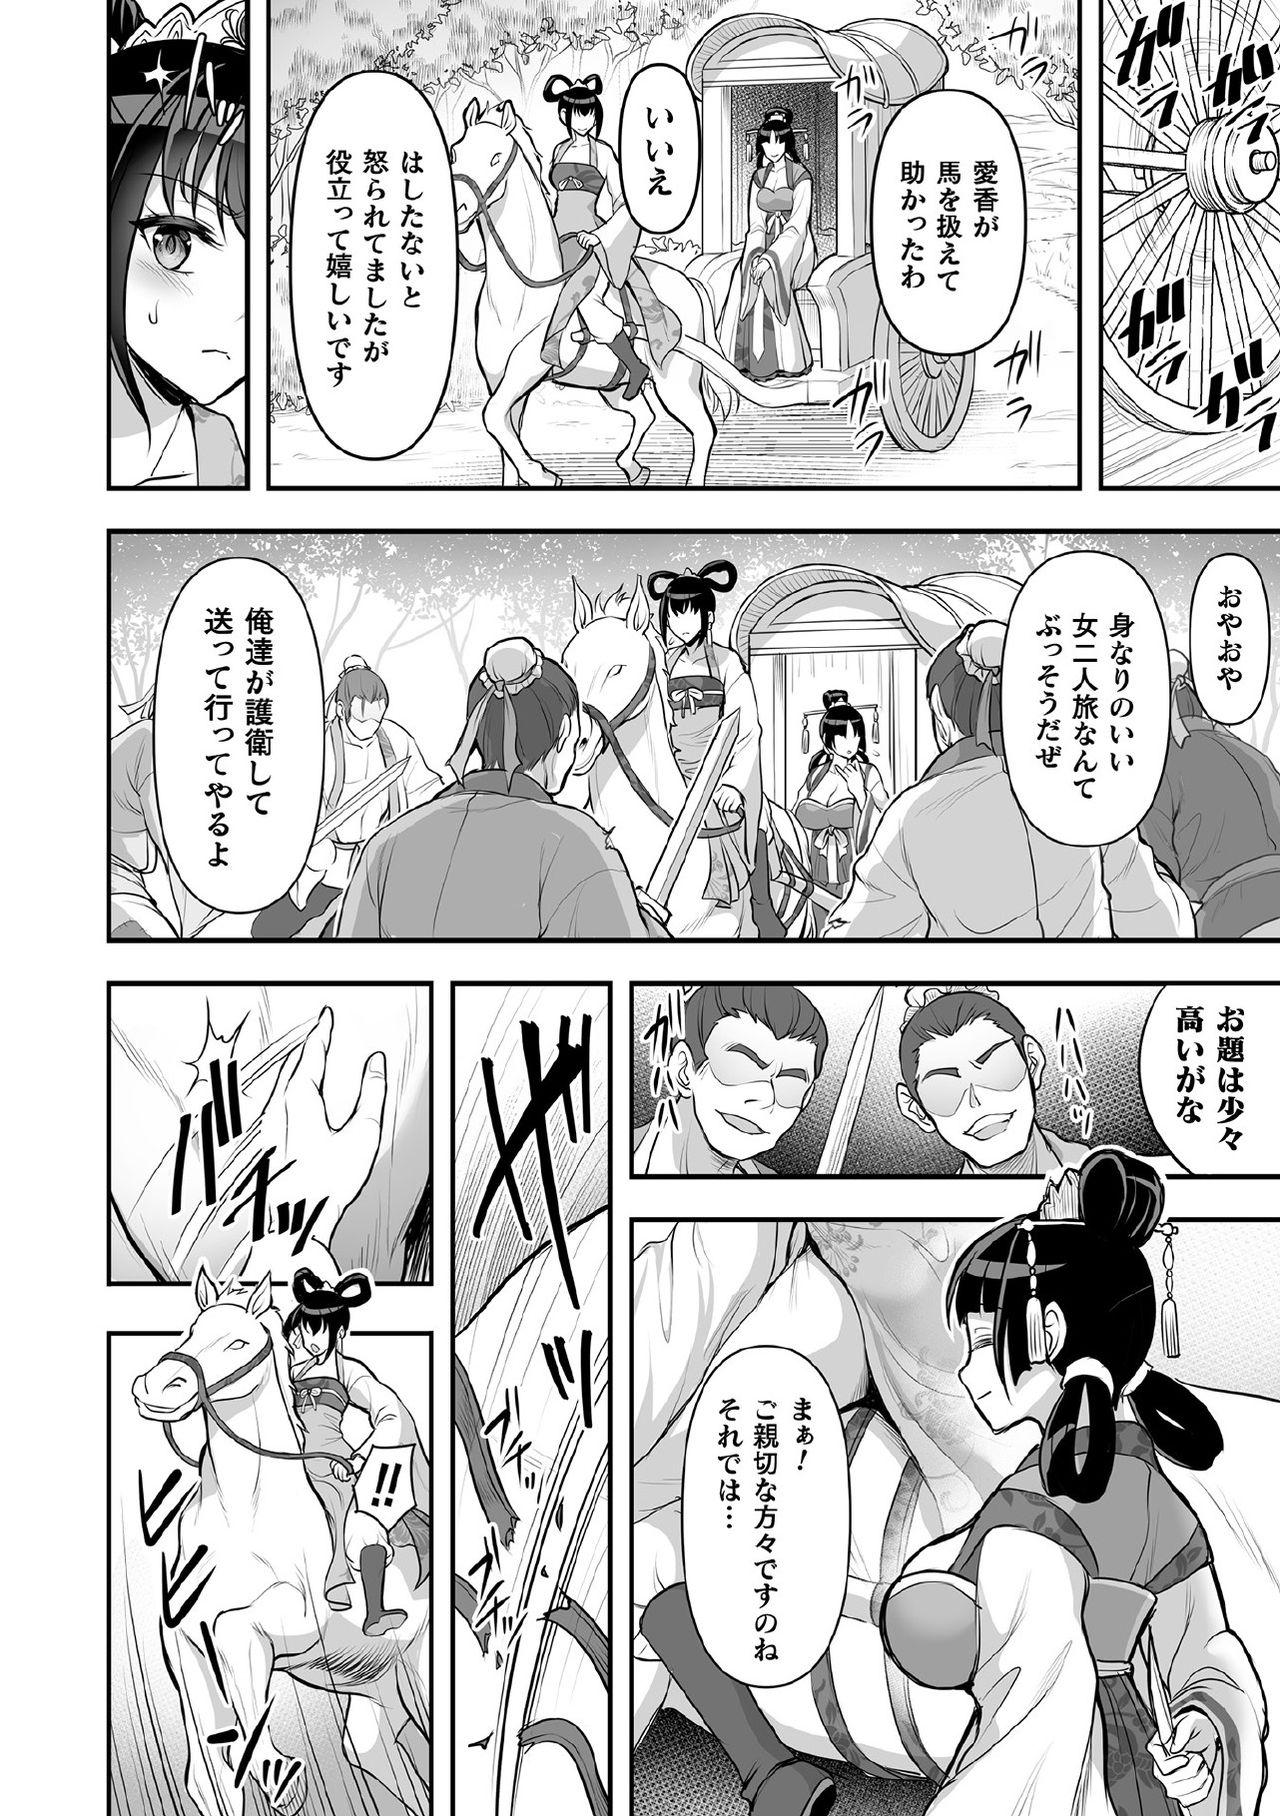 Girlfriends Kukkoro Heroines Vol. 11 - Kuroinu kedakaki seijo wa hakudaku ni somaru High Definition - Page 4